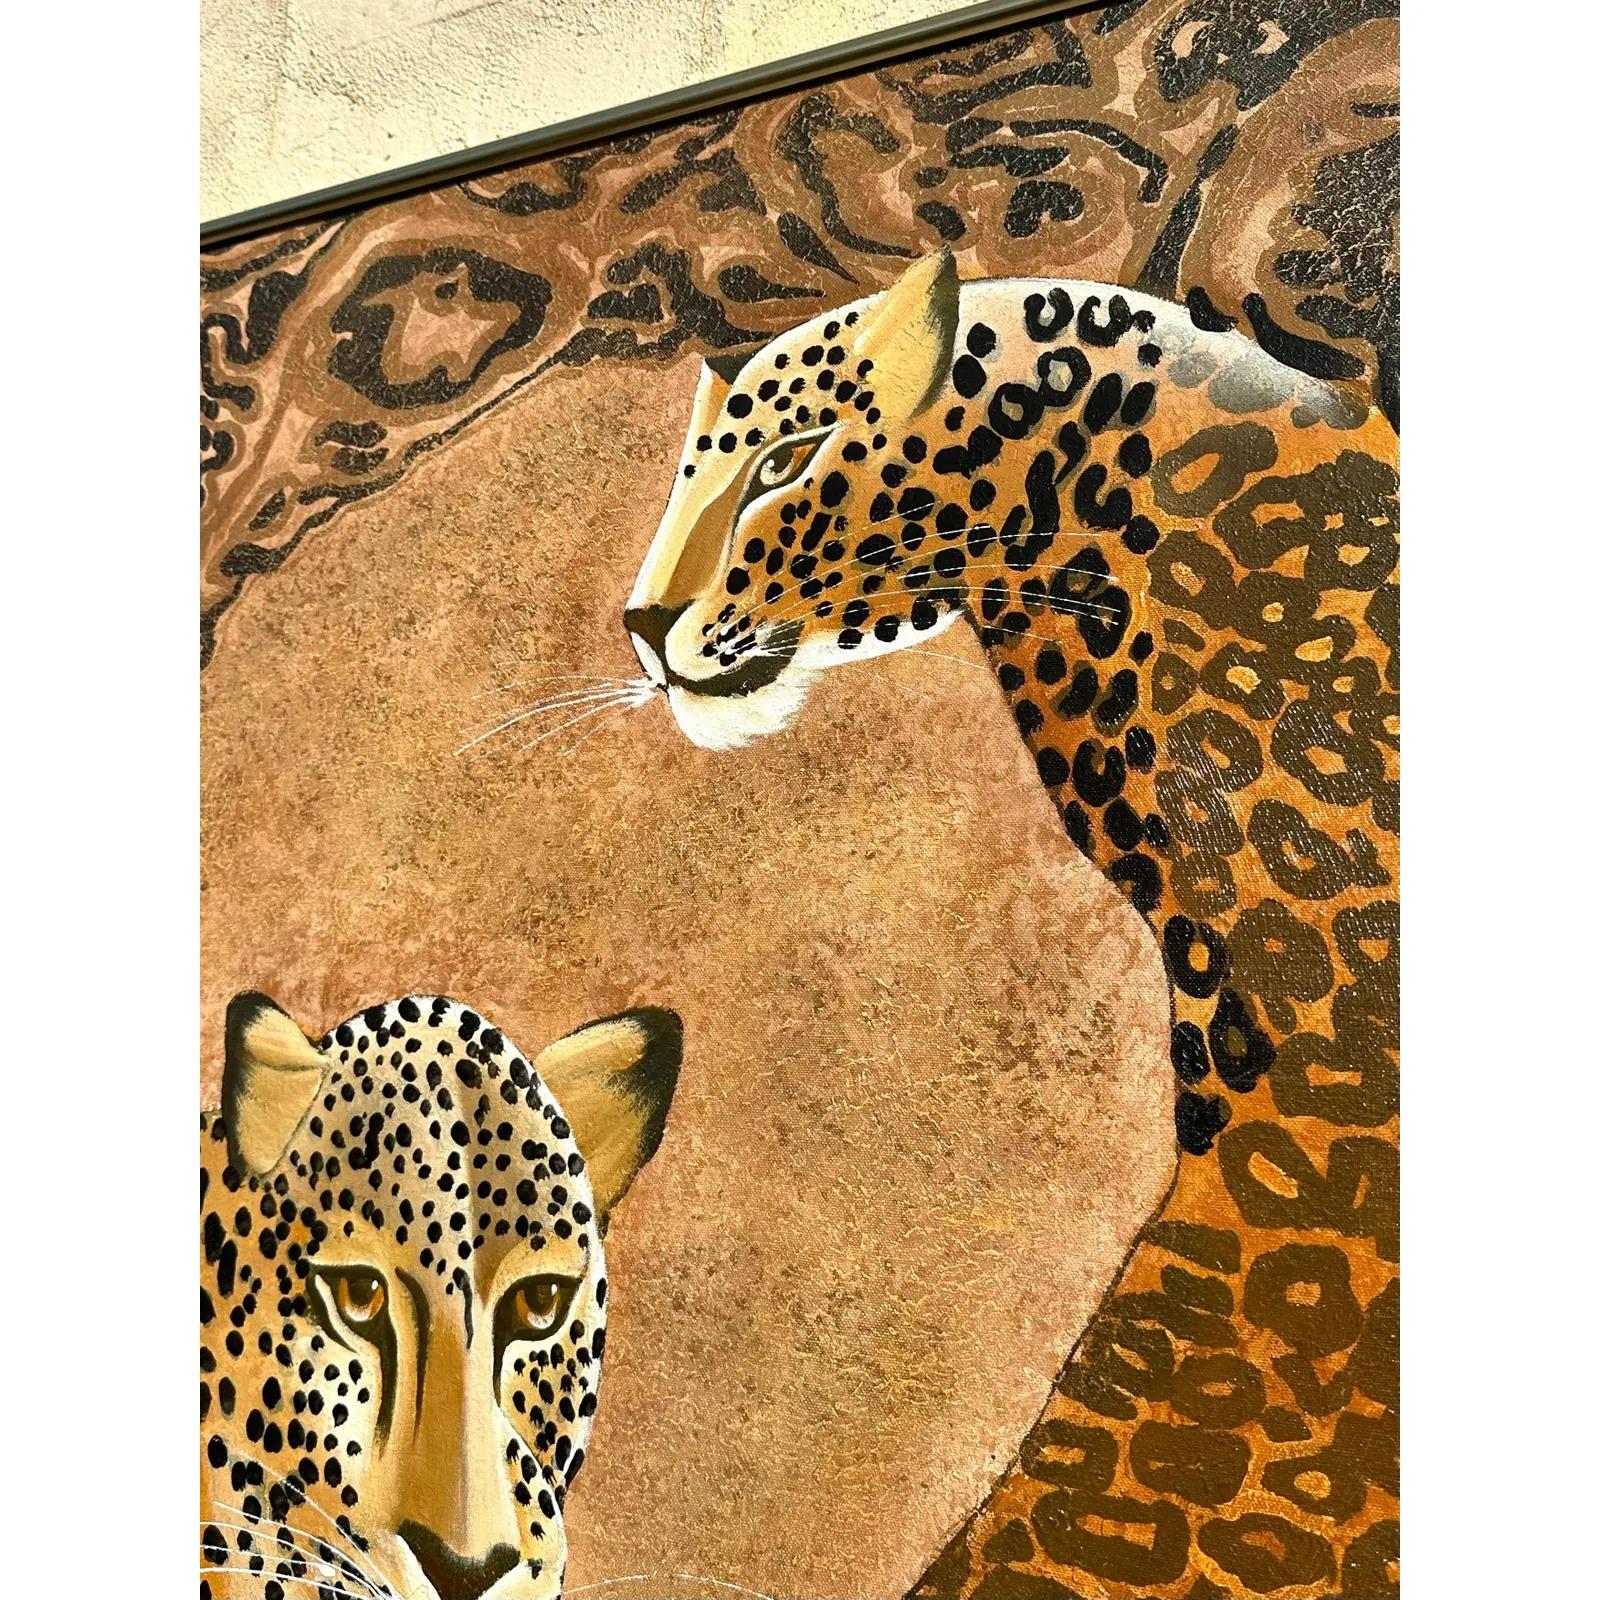 Ein fabelhaftes Original-Ölgemälde im Boho-Stil. Ein stattliches Gepardenpaar in Ruhe. Signiert vom Künstler. Erworben aus einem Nachlass in Palm Beach.

Das Gemälde ist in gutem Vintage-Zustand. Kleinere Schrammen und Schönheitsfehler, die dem